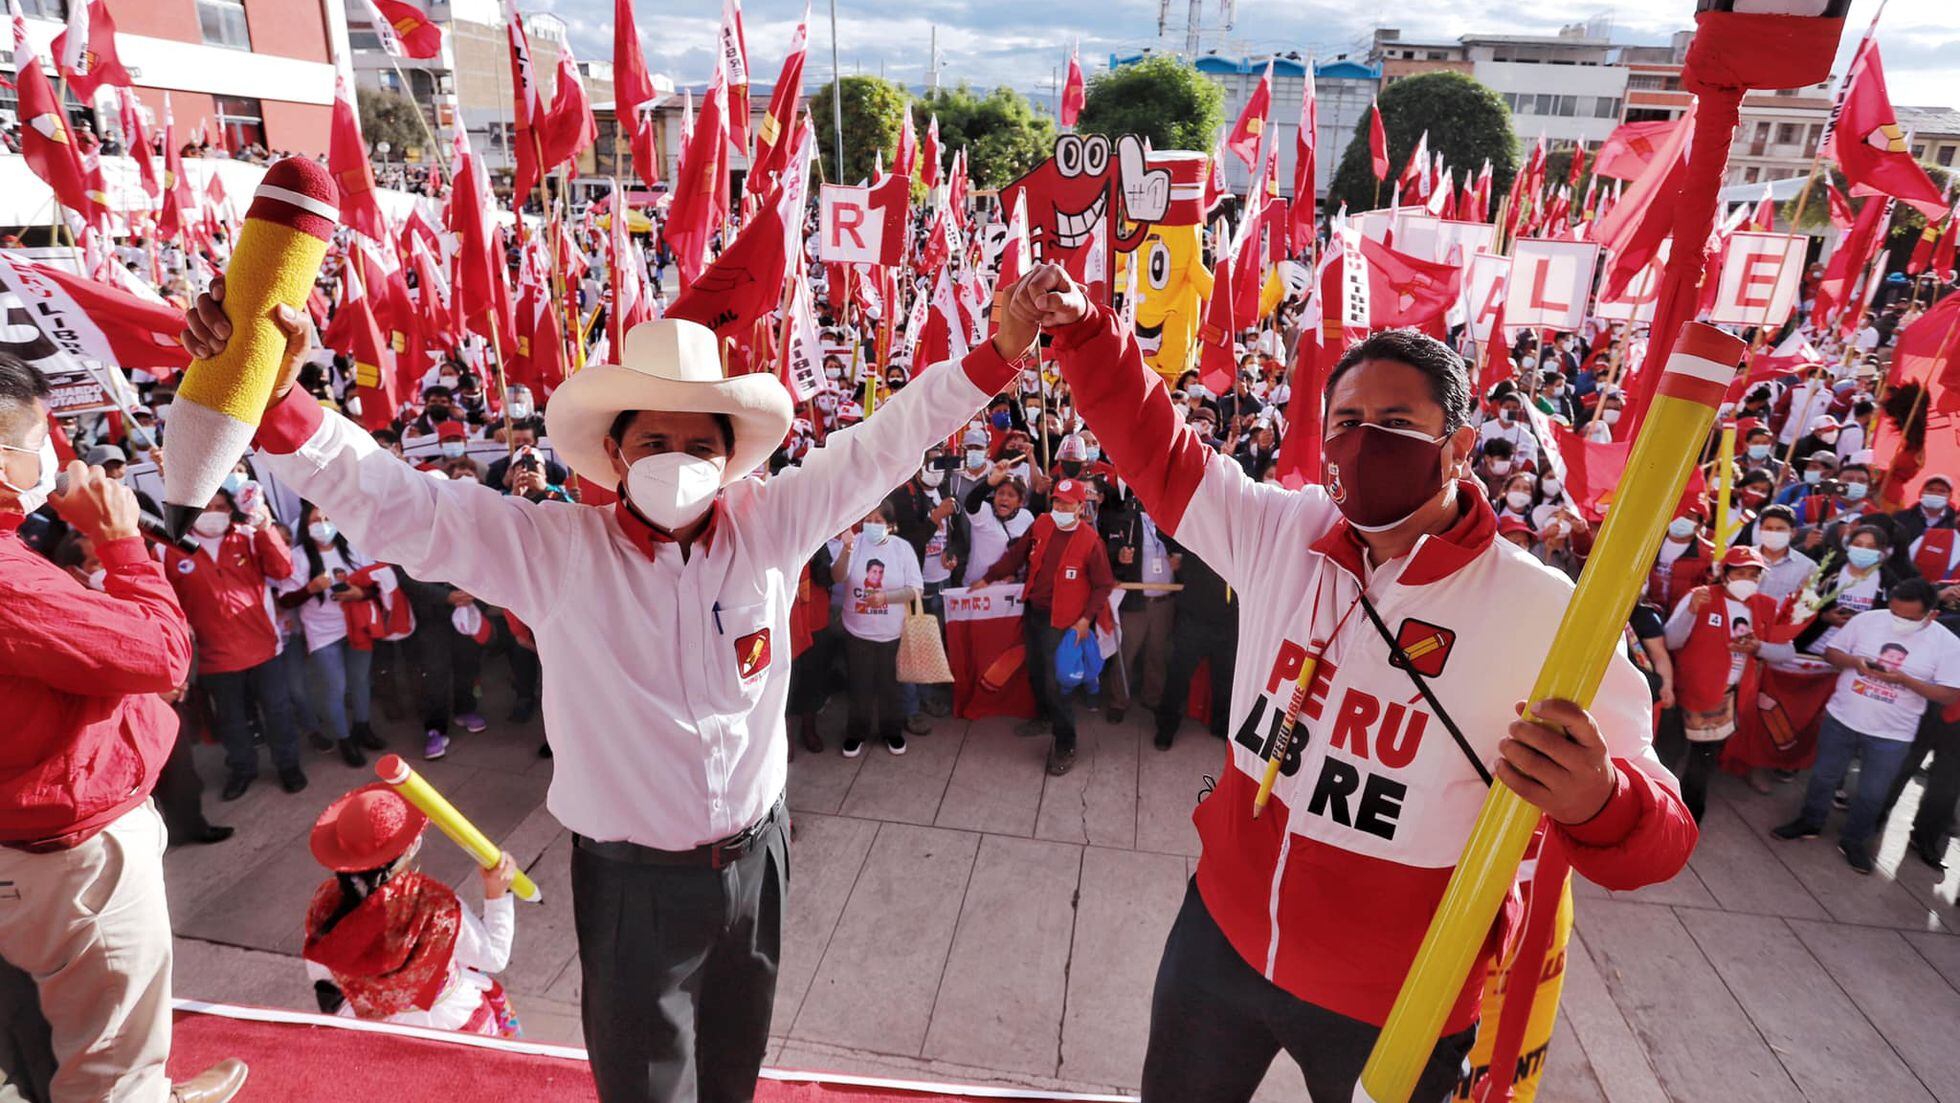 Perú: El enigma Cerrón, la presencia incómoda de Pedro Castillo |  Internacional | EL PAÍS